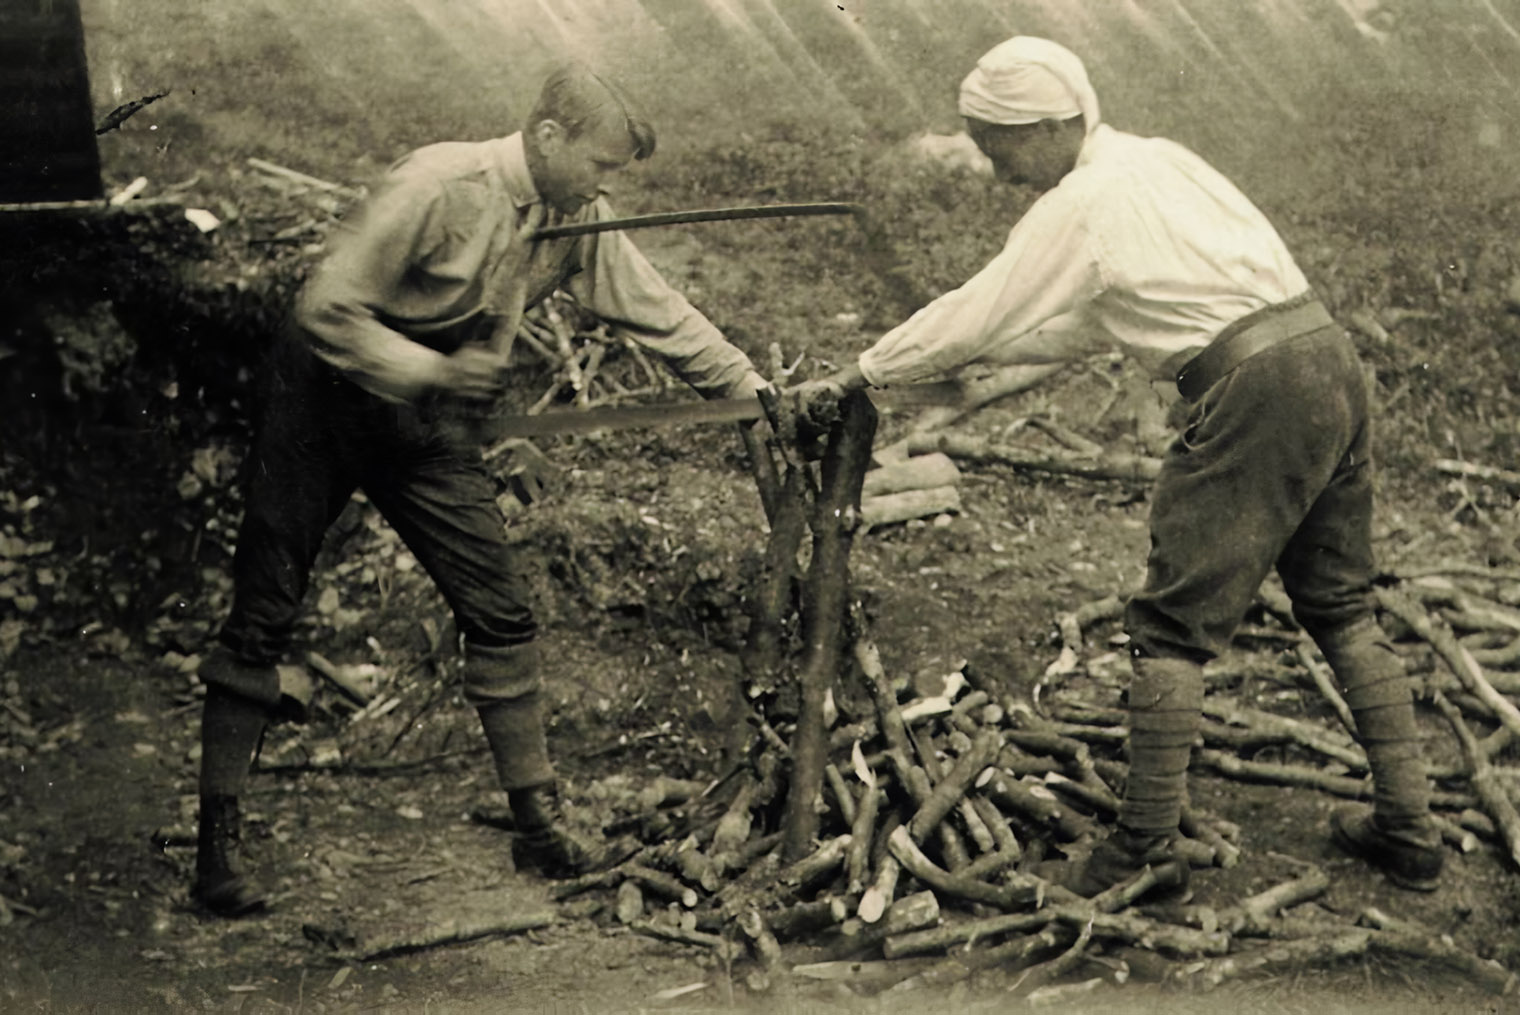 Гадамер (слева) и Хайдеггер пилят дрова. Источник: buendischerwaldgang.tumblr.com